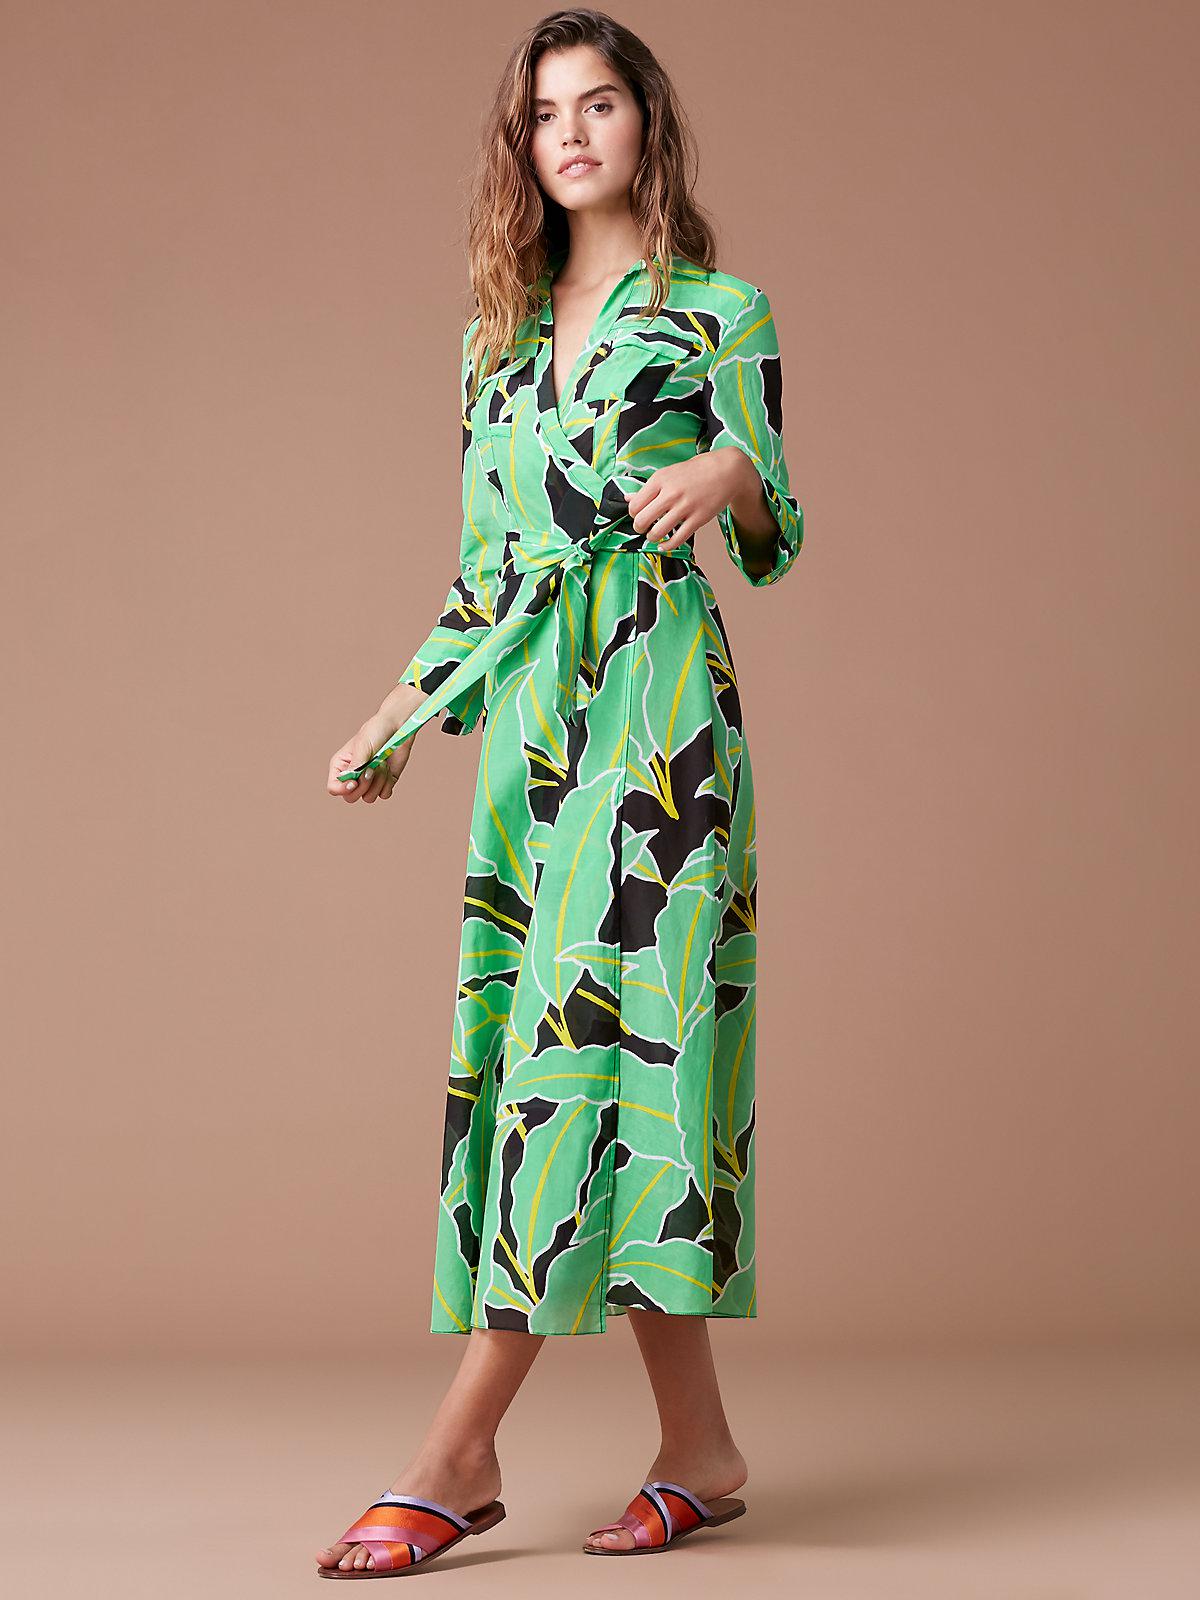 Diane von Furstenberg Cotton Collared Wrap Dress Cover-up in Green ...